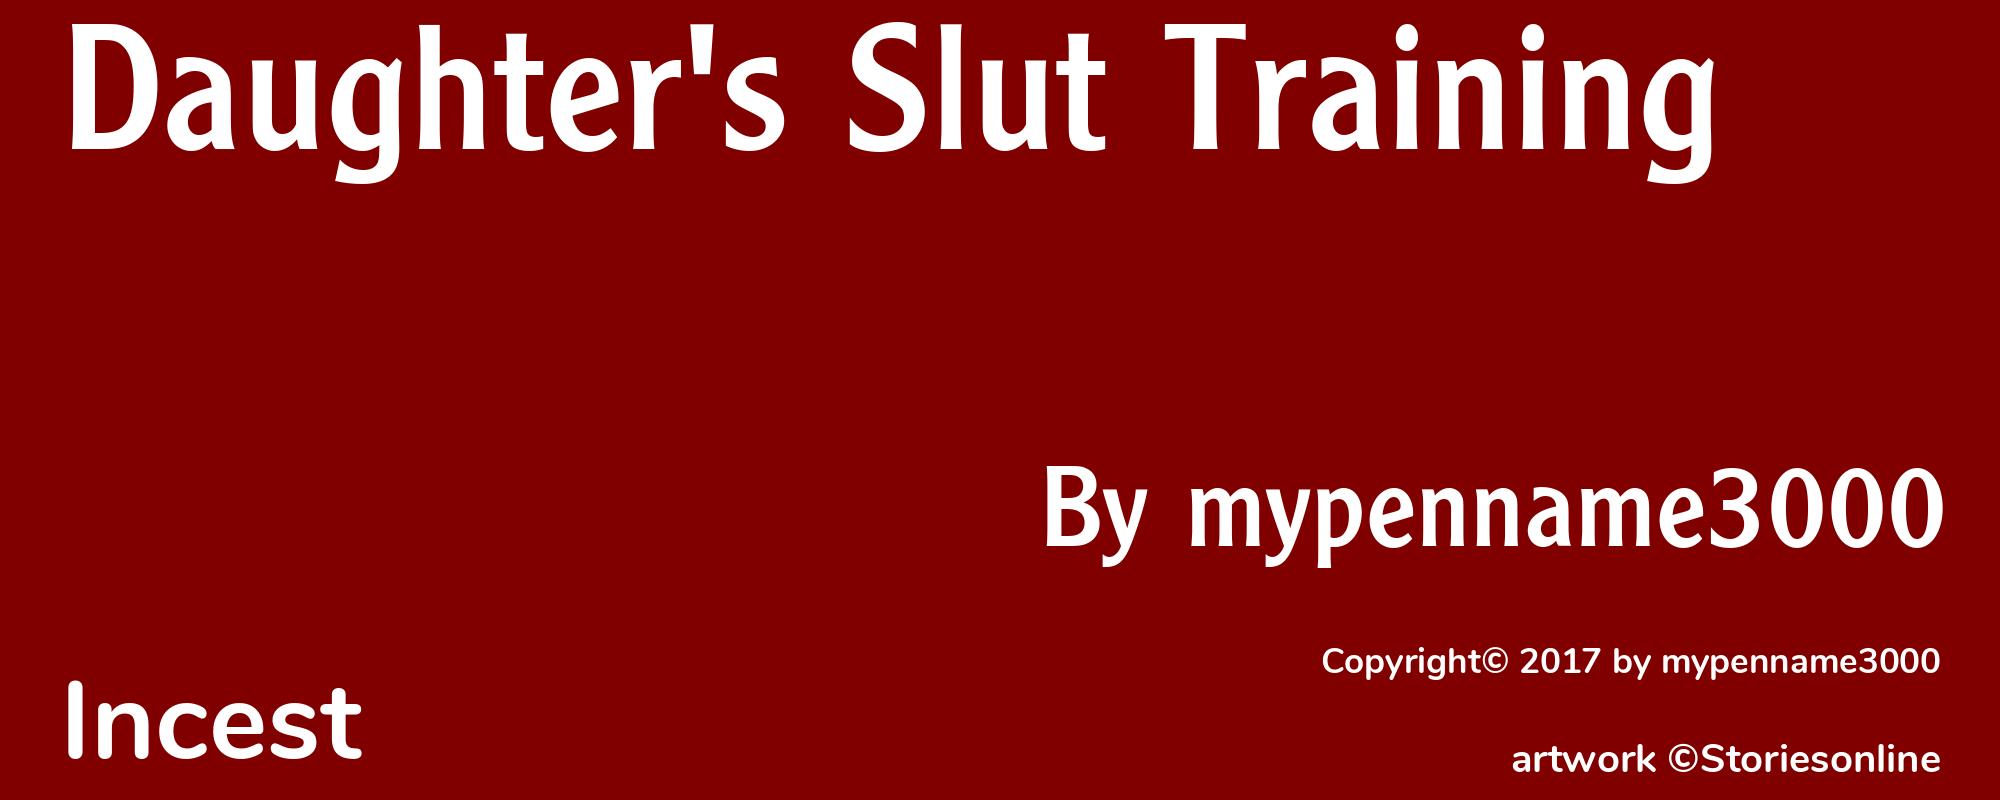 Daughter's Slut Training - Cover